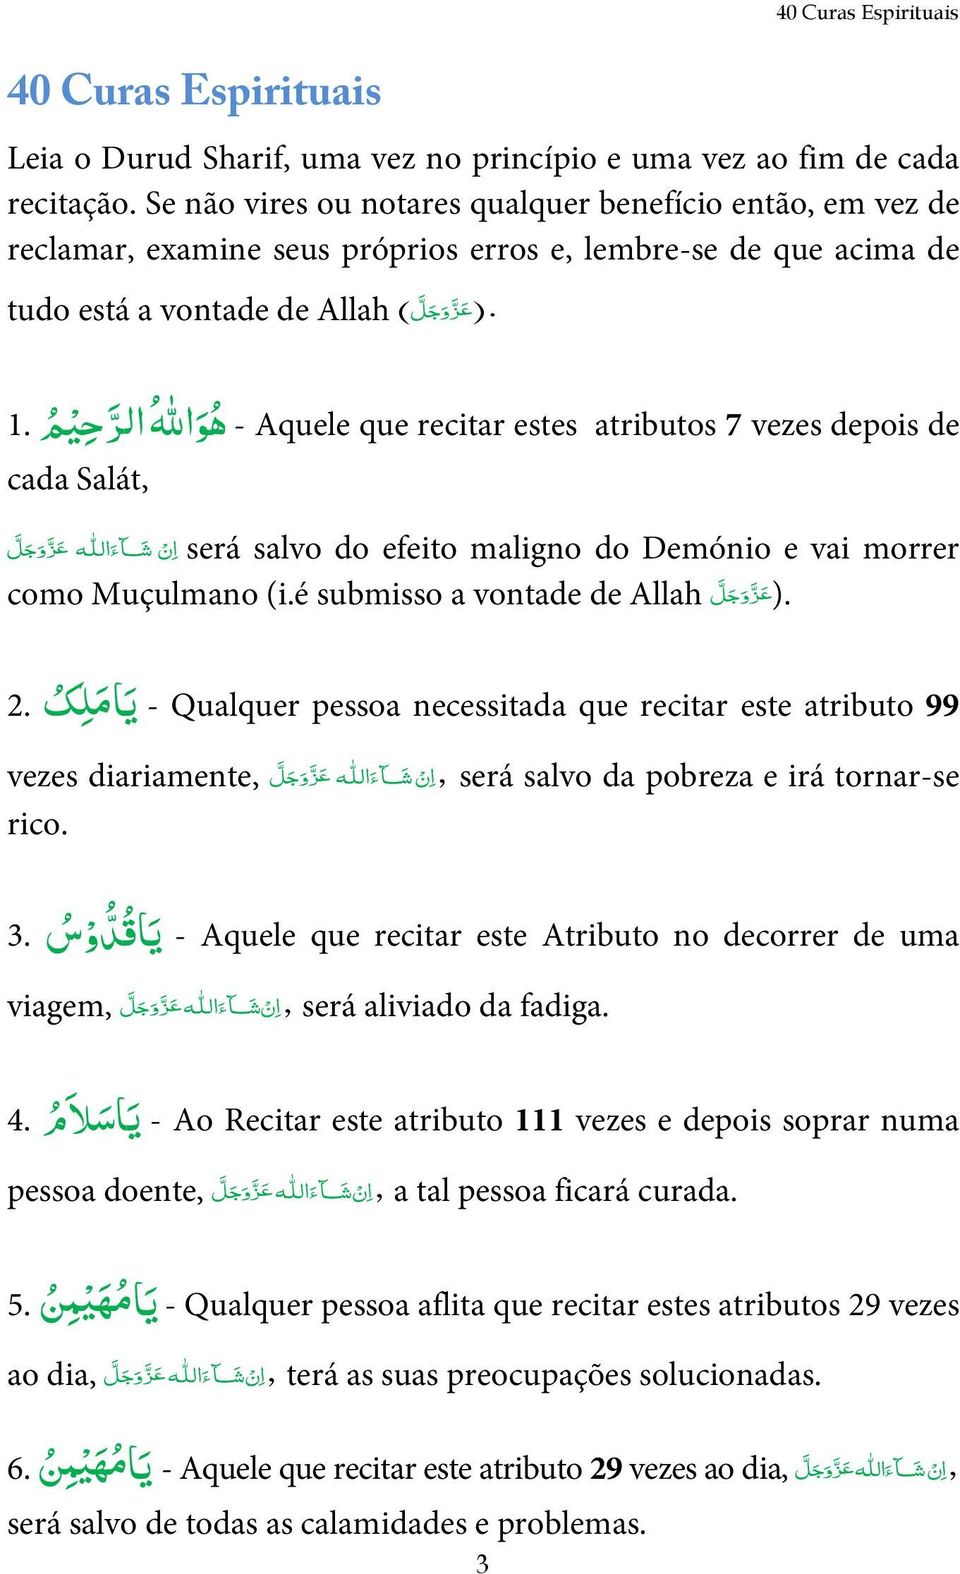 vezes depois de ه و االله الر ح ي م 1. cada Salát, será salvo do efeito maligno do Demónio e vai morrer como Muçulmano (i.é submisso a vontade de Allah ).